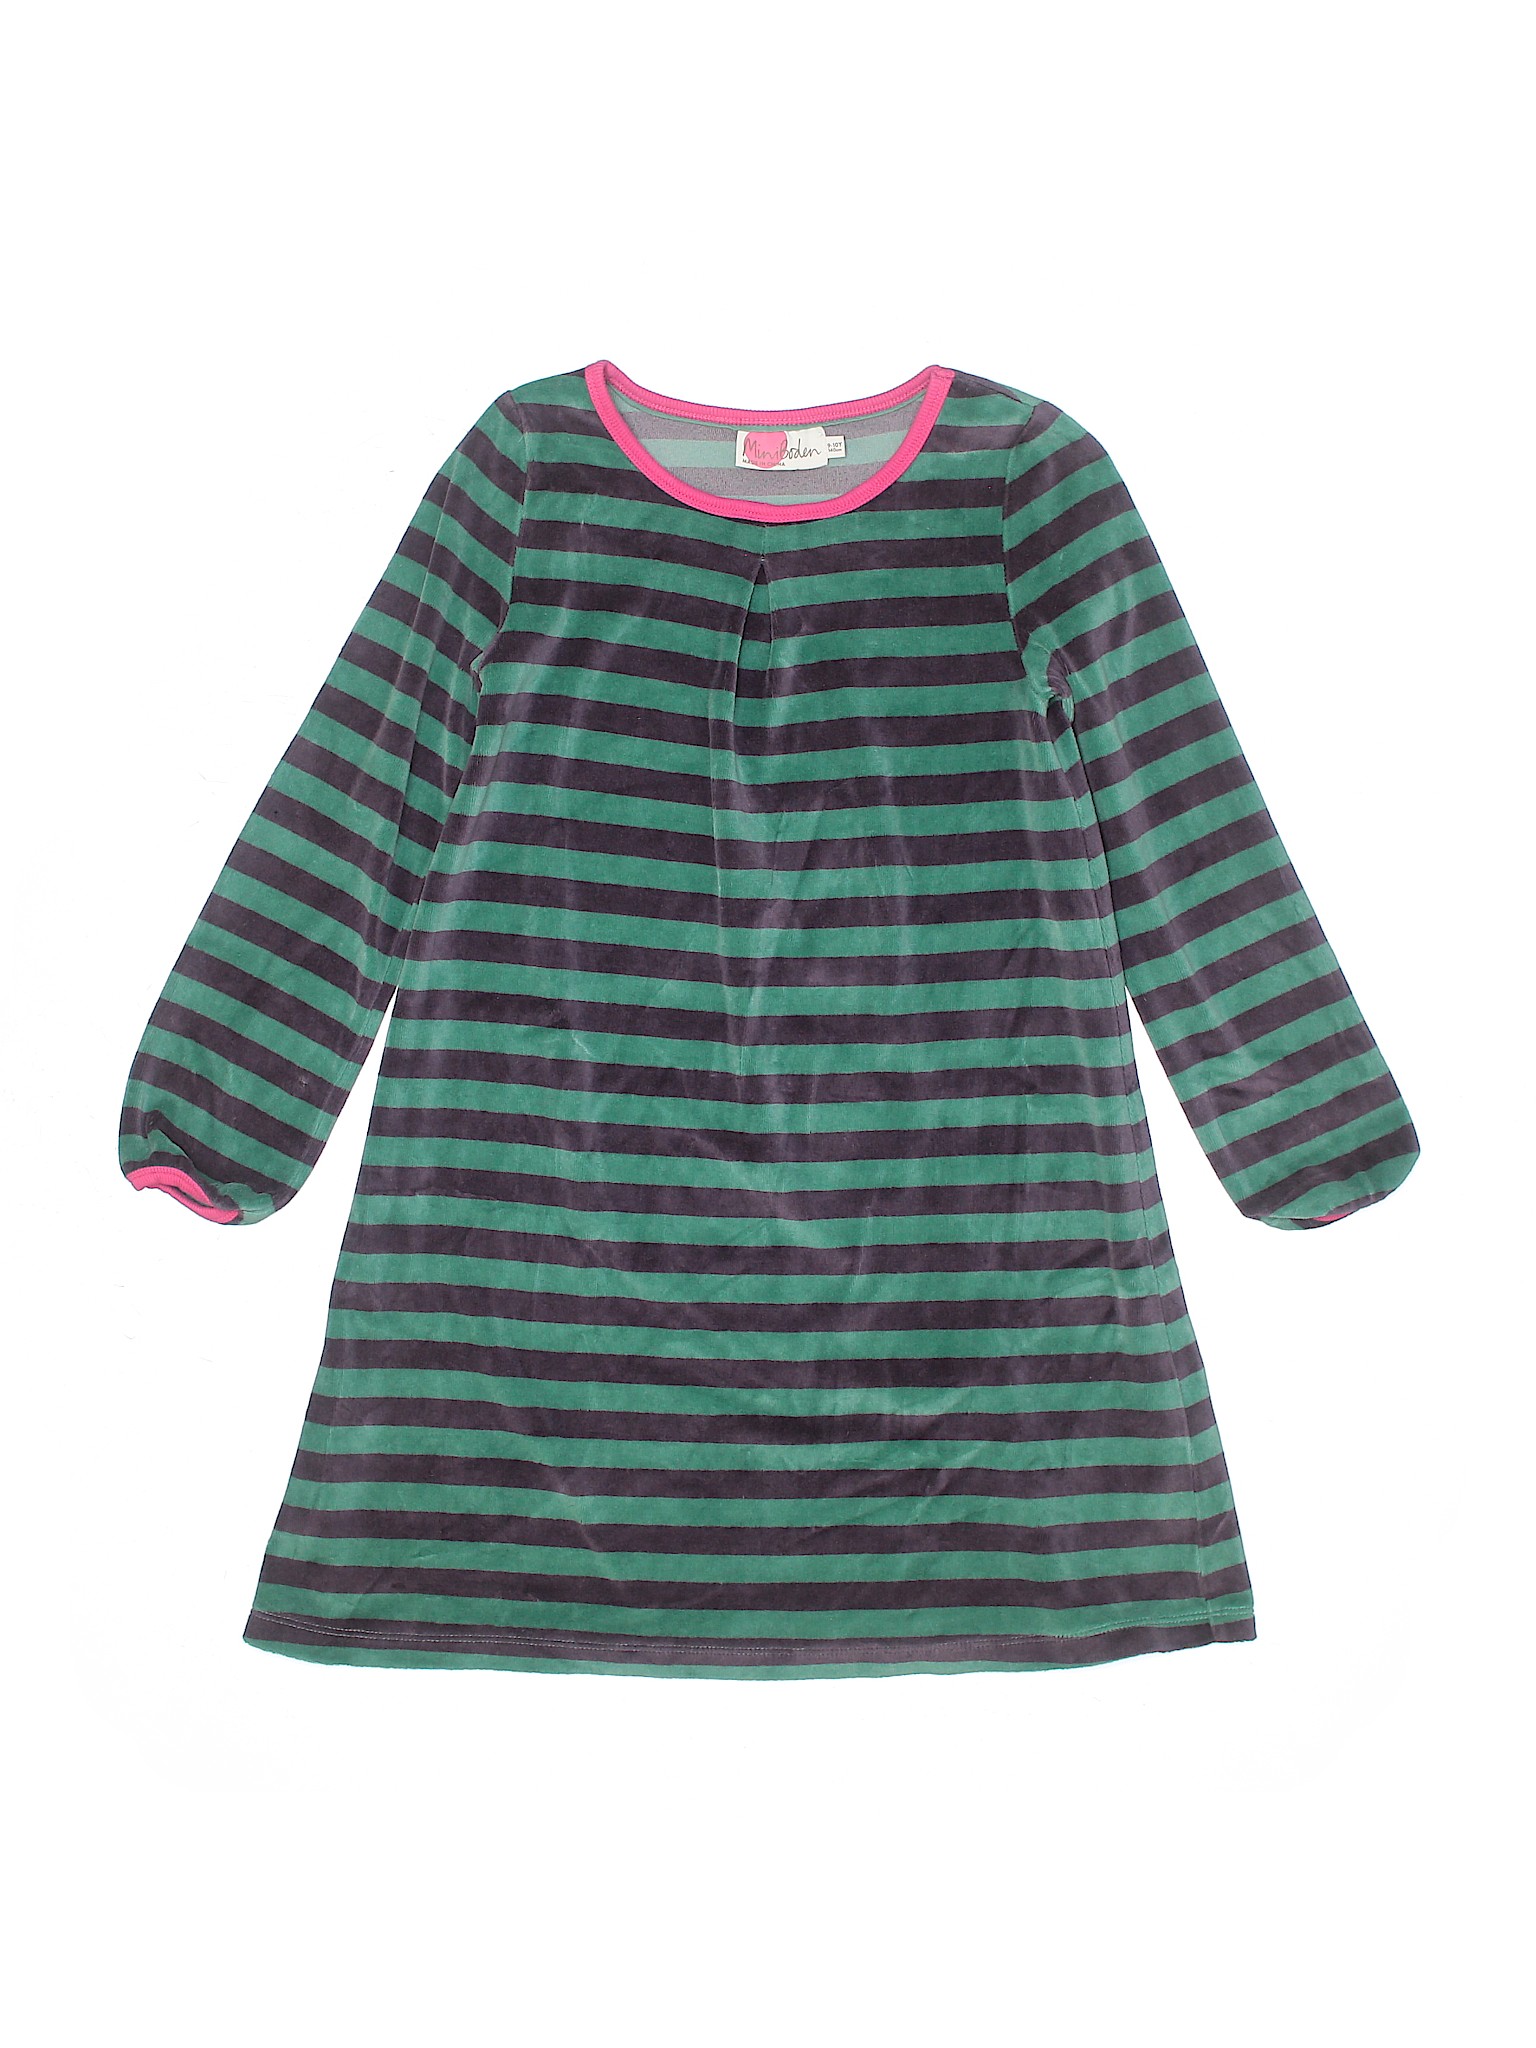 Mini Boden Girls Green Dress 9 | eBay